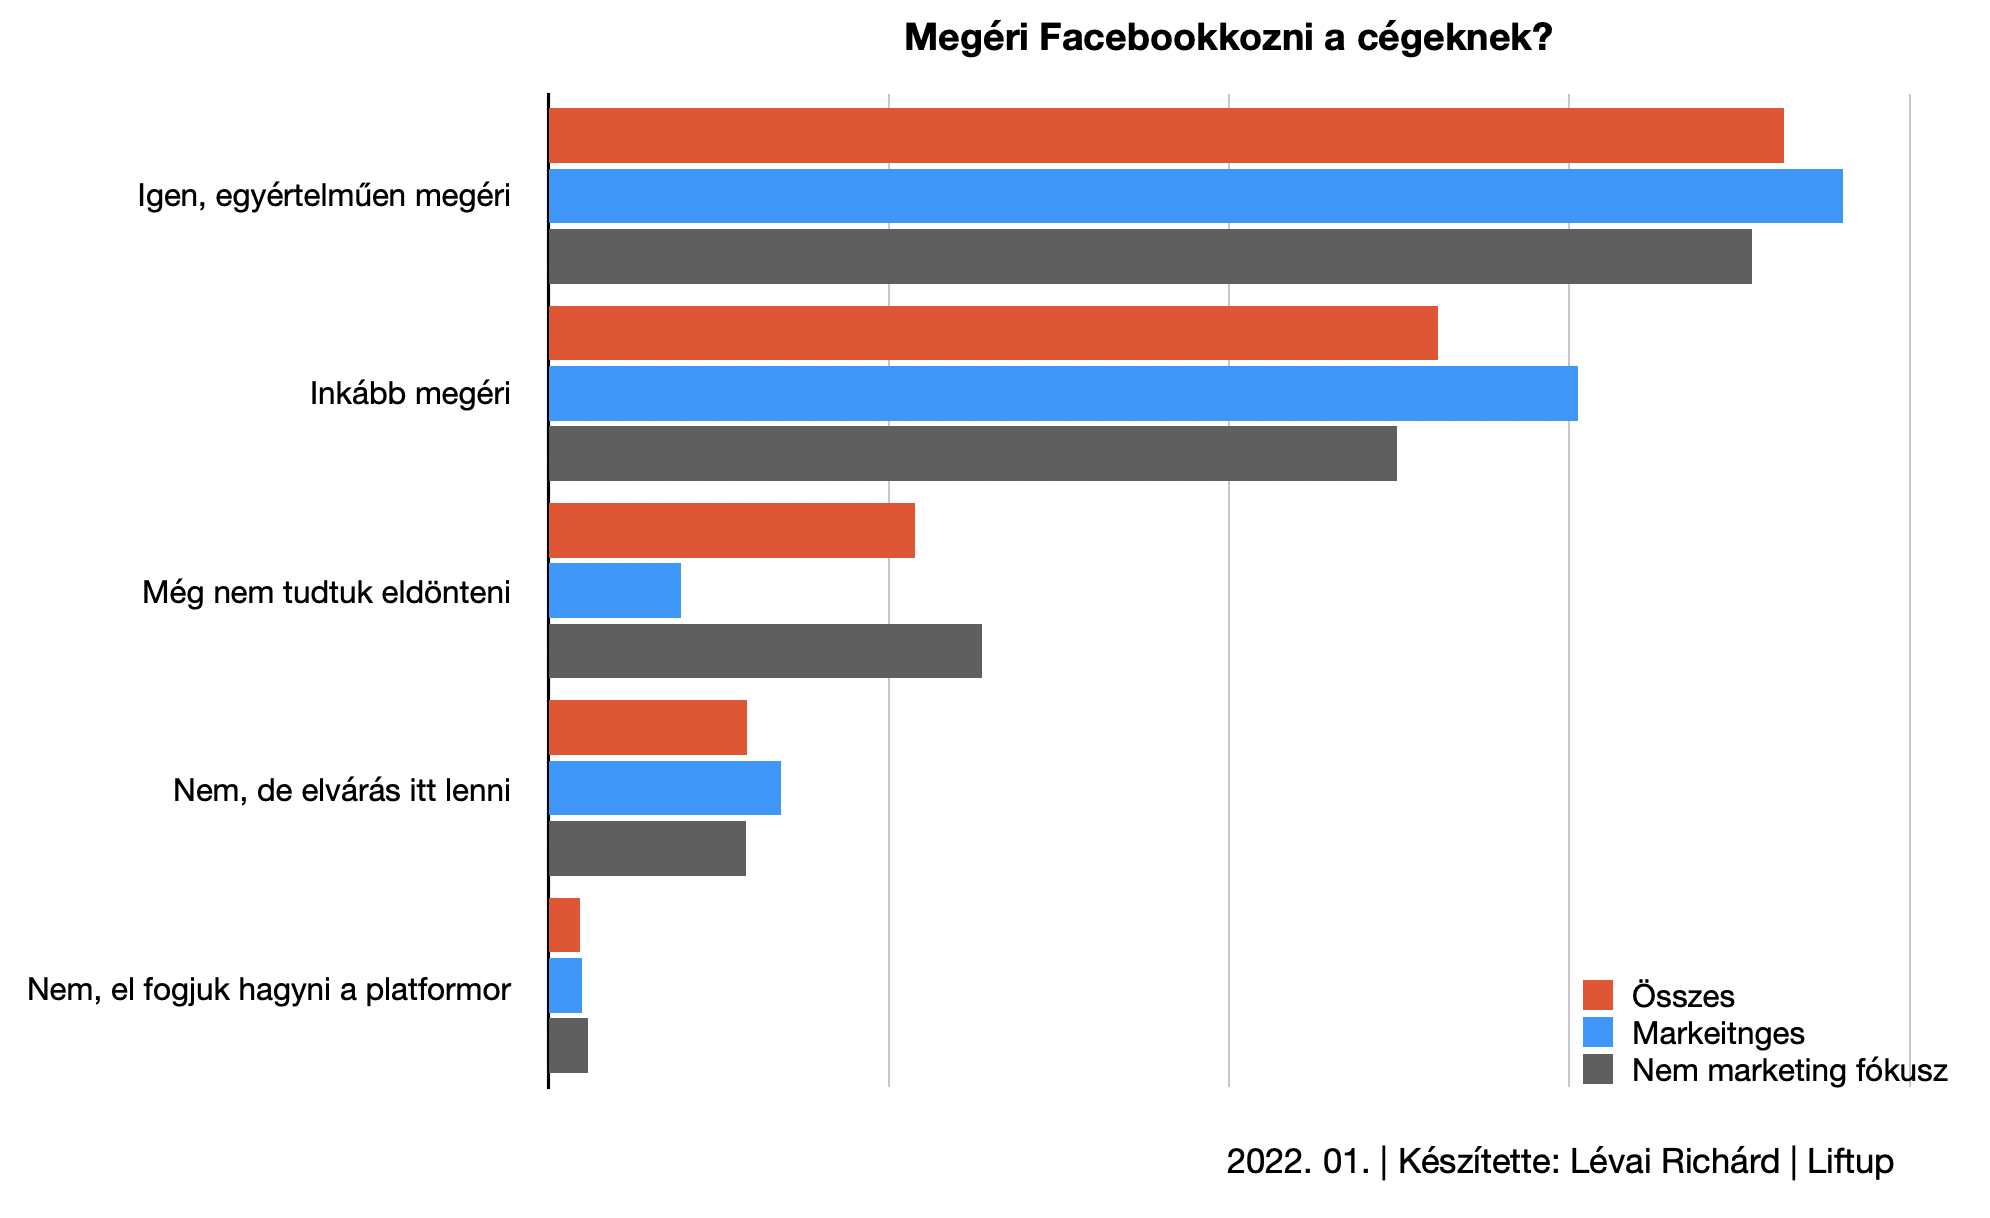 Eredményesen, de rossz hangulatban használják a magyar cégek a Facebookot